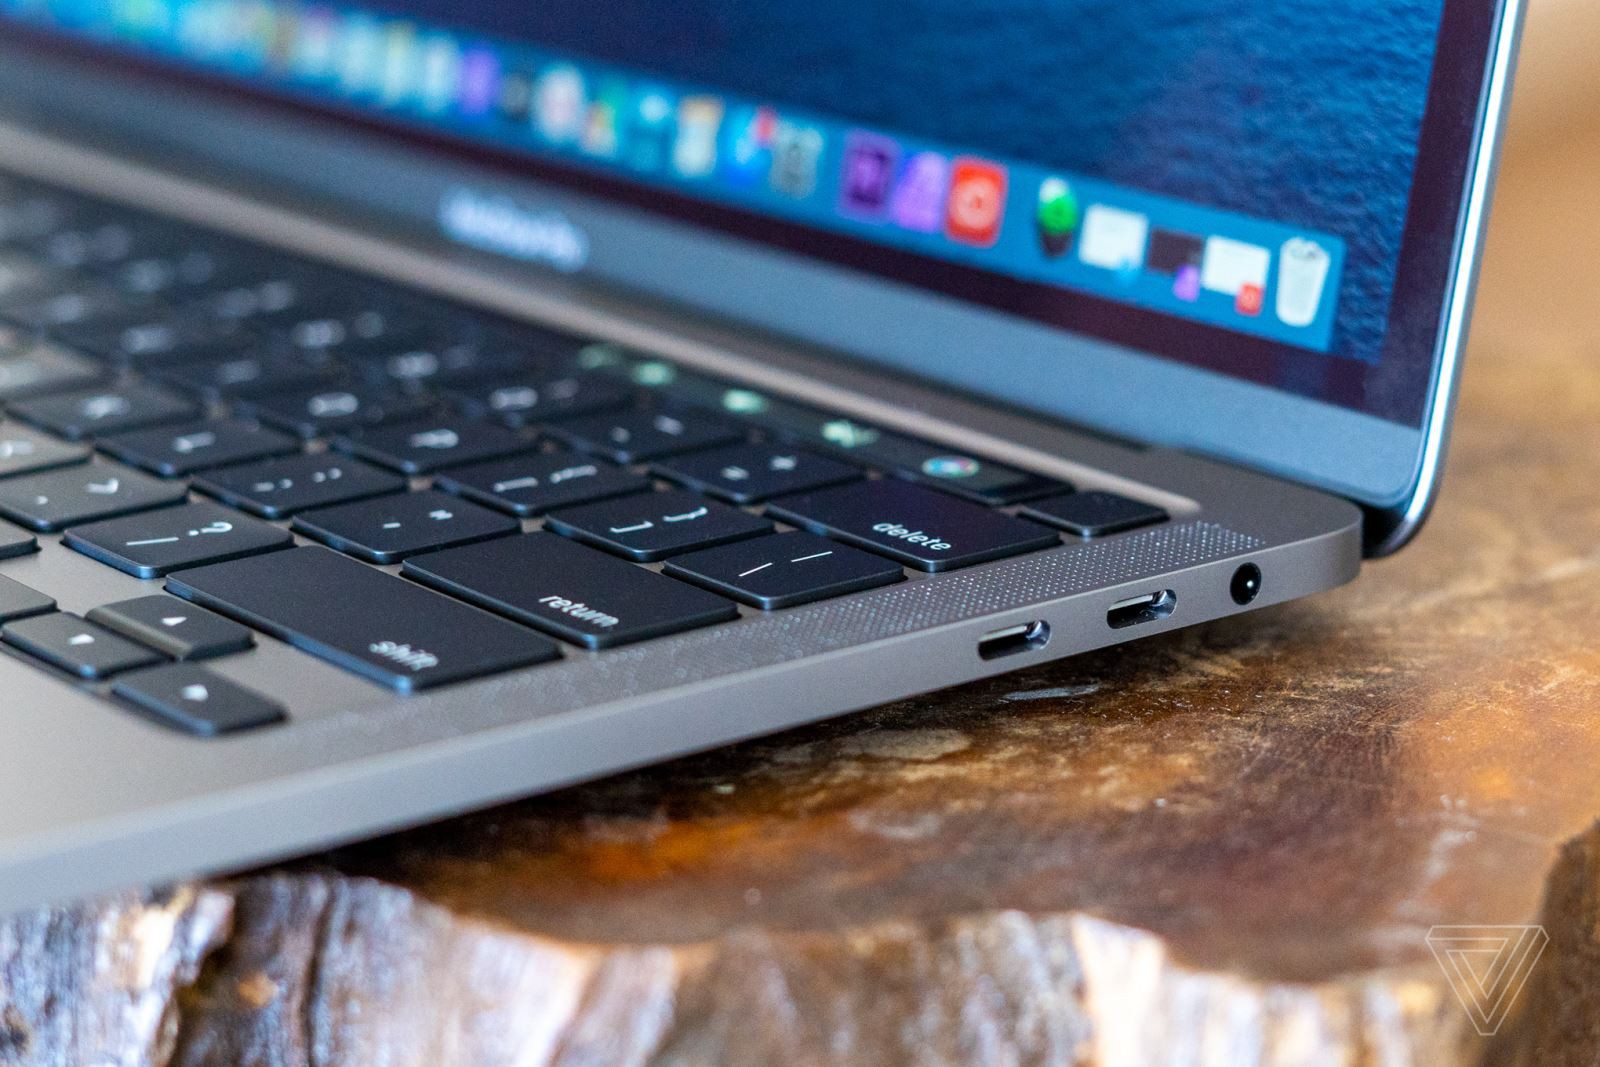 Đánh giá nhanh MacBook Pro 13 inch 2020 tại FPTShop